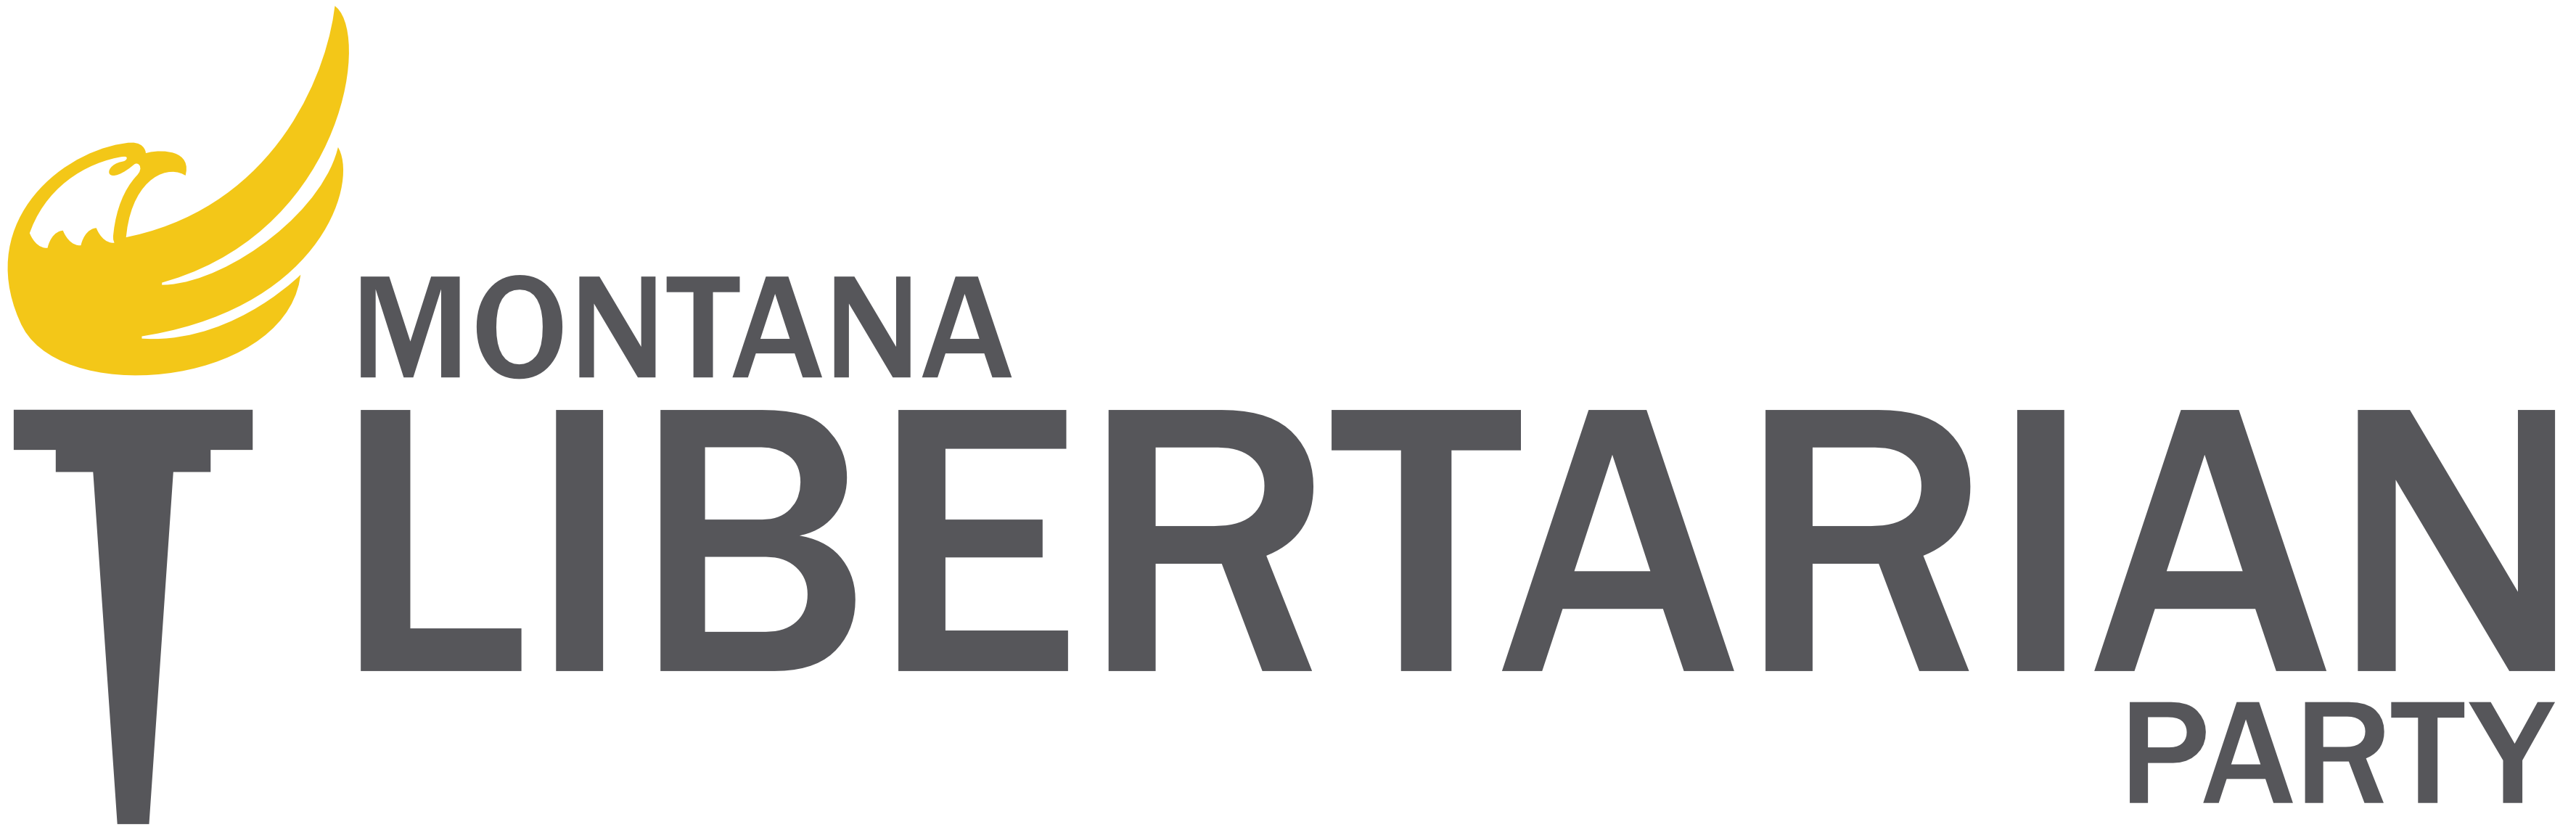 Montana Libertarian Party logo